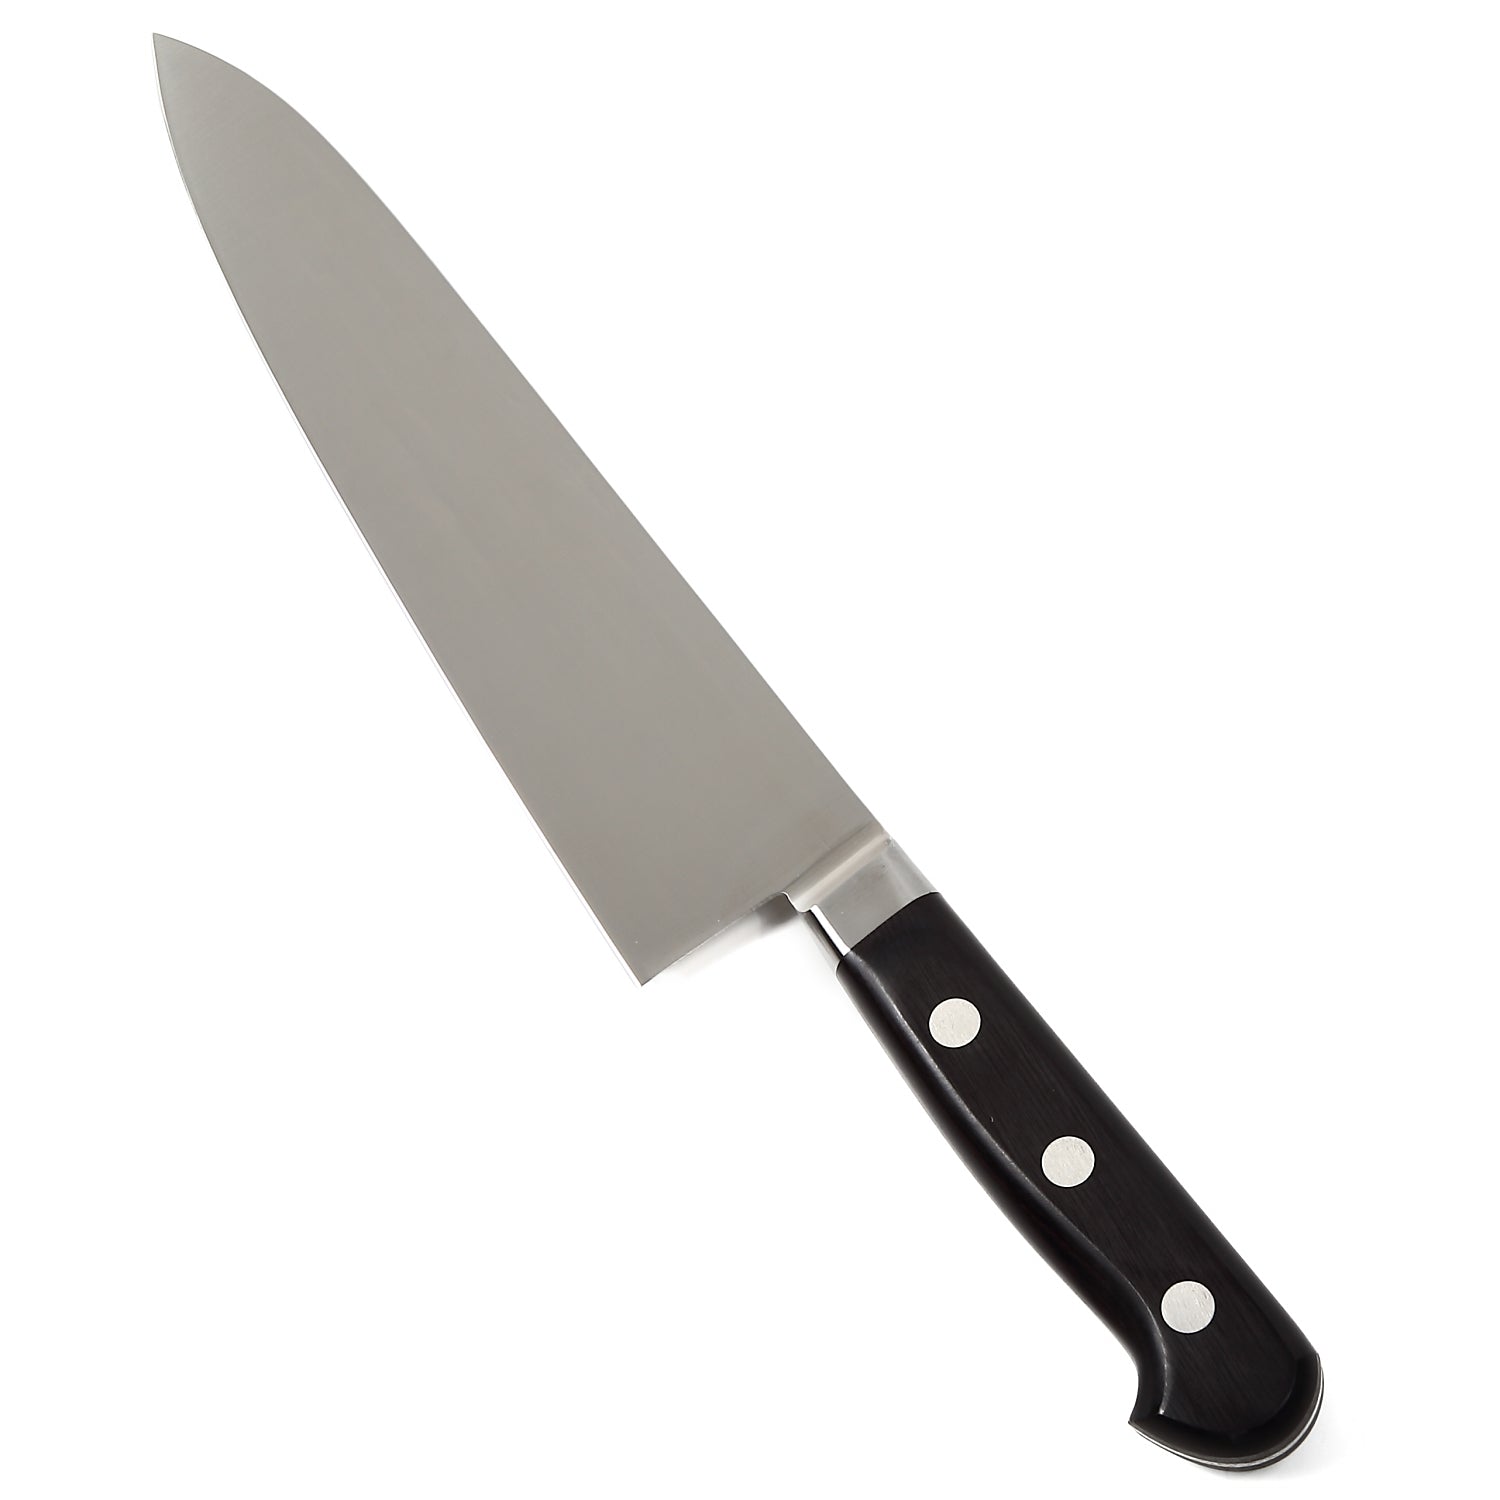 Syosaku Japanese Best Sharp Kitchen Chef Knife INOX AUS-8A Stainless Steel Black Pakkawood Handle, Gyuto 8.3-inch (210mm) - Syosaku-Japan